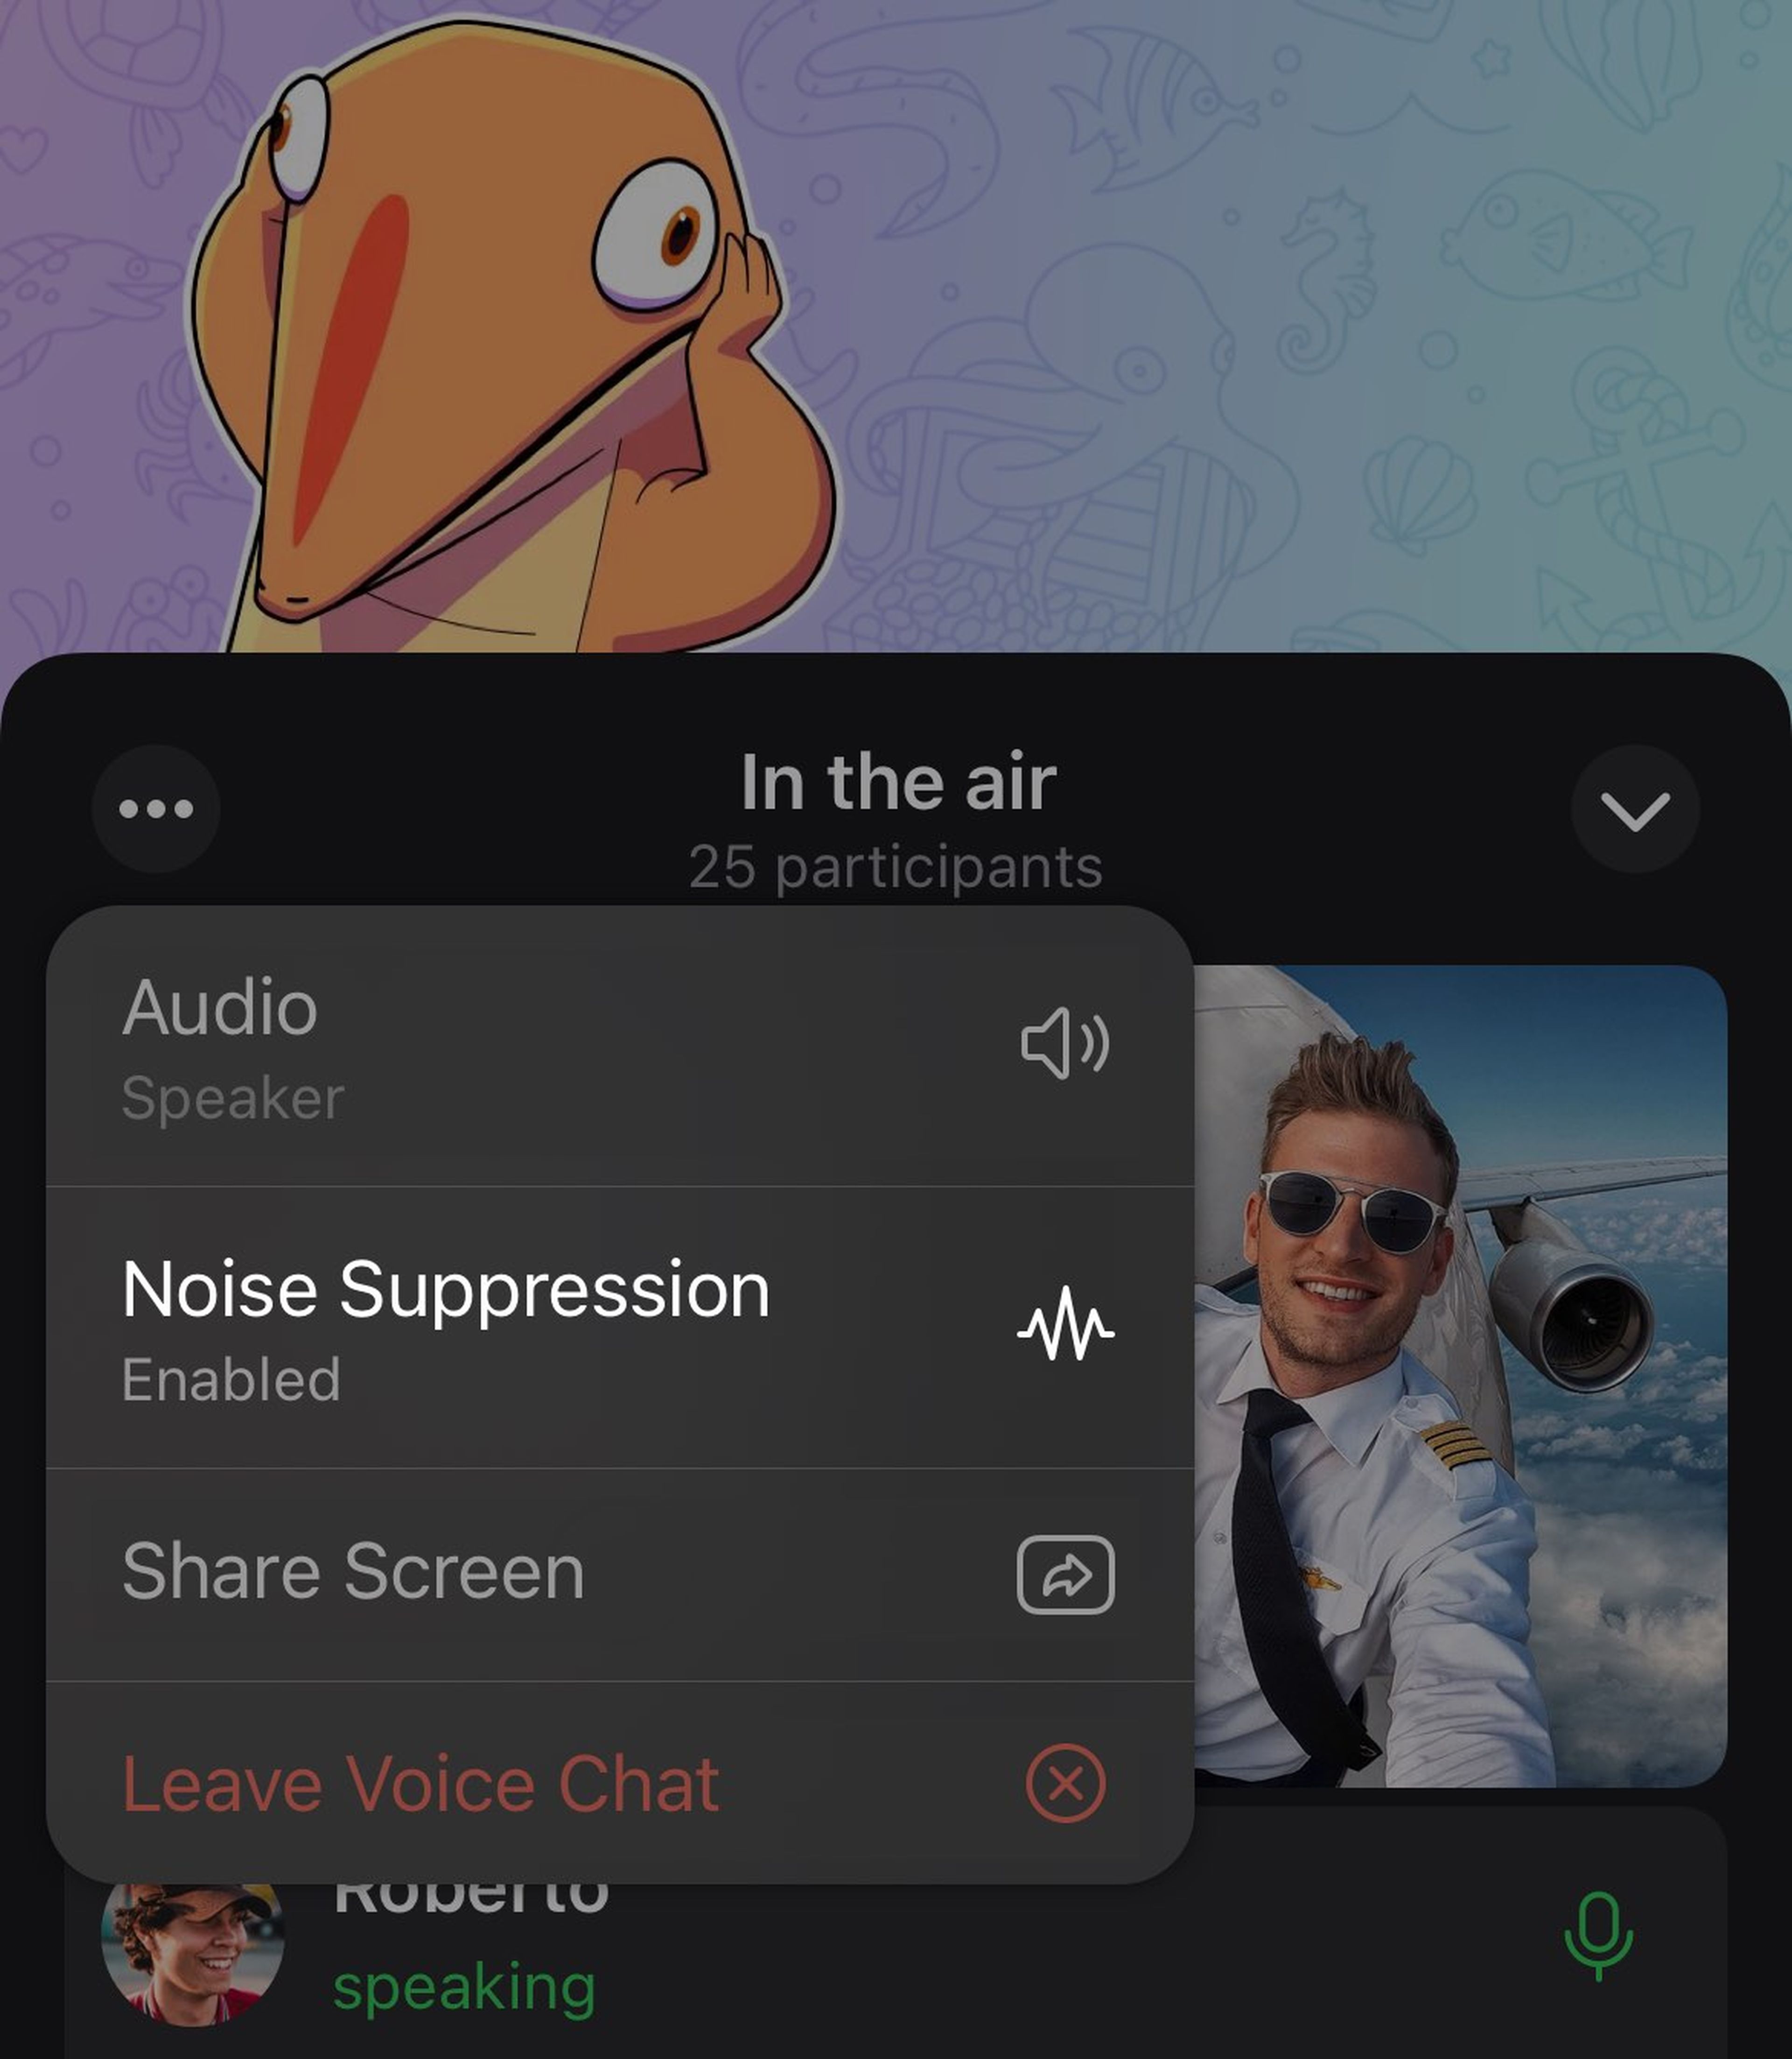 Las videollamadas grupales llegan a Telegram: hasta 30 personas y con opción para compartir la pantalla